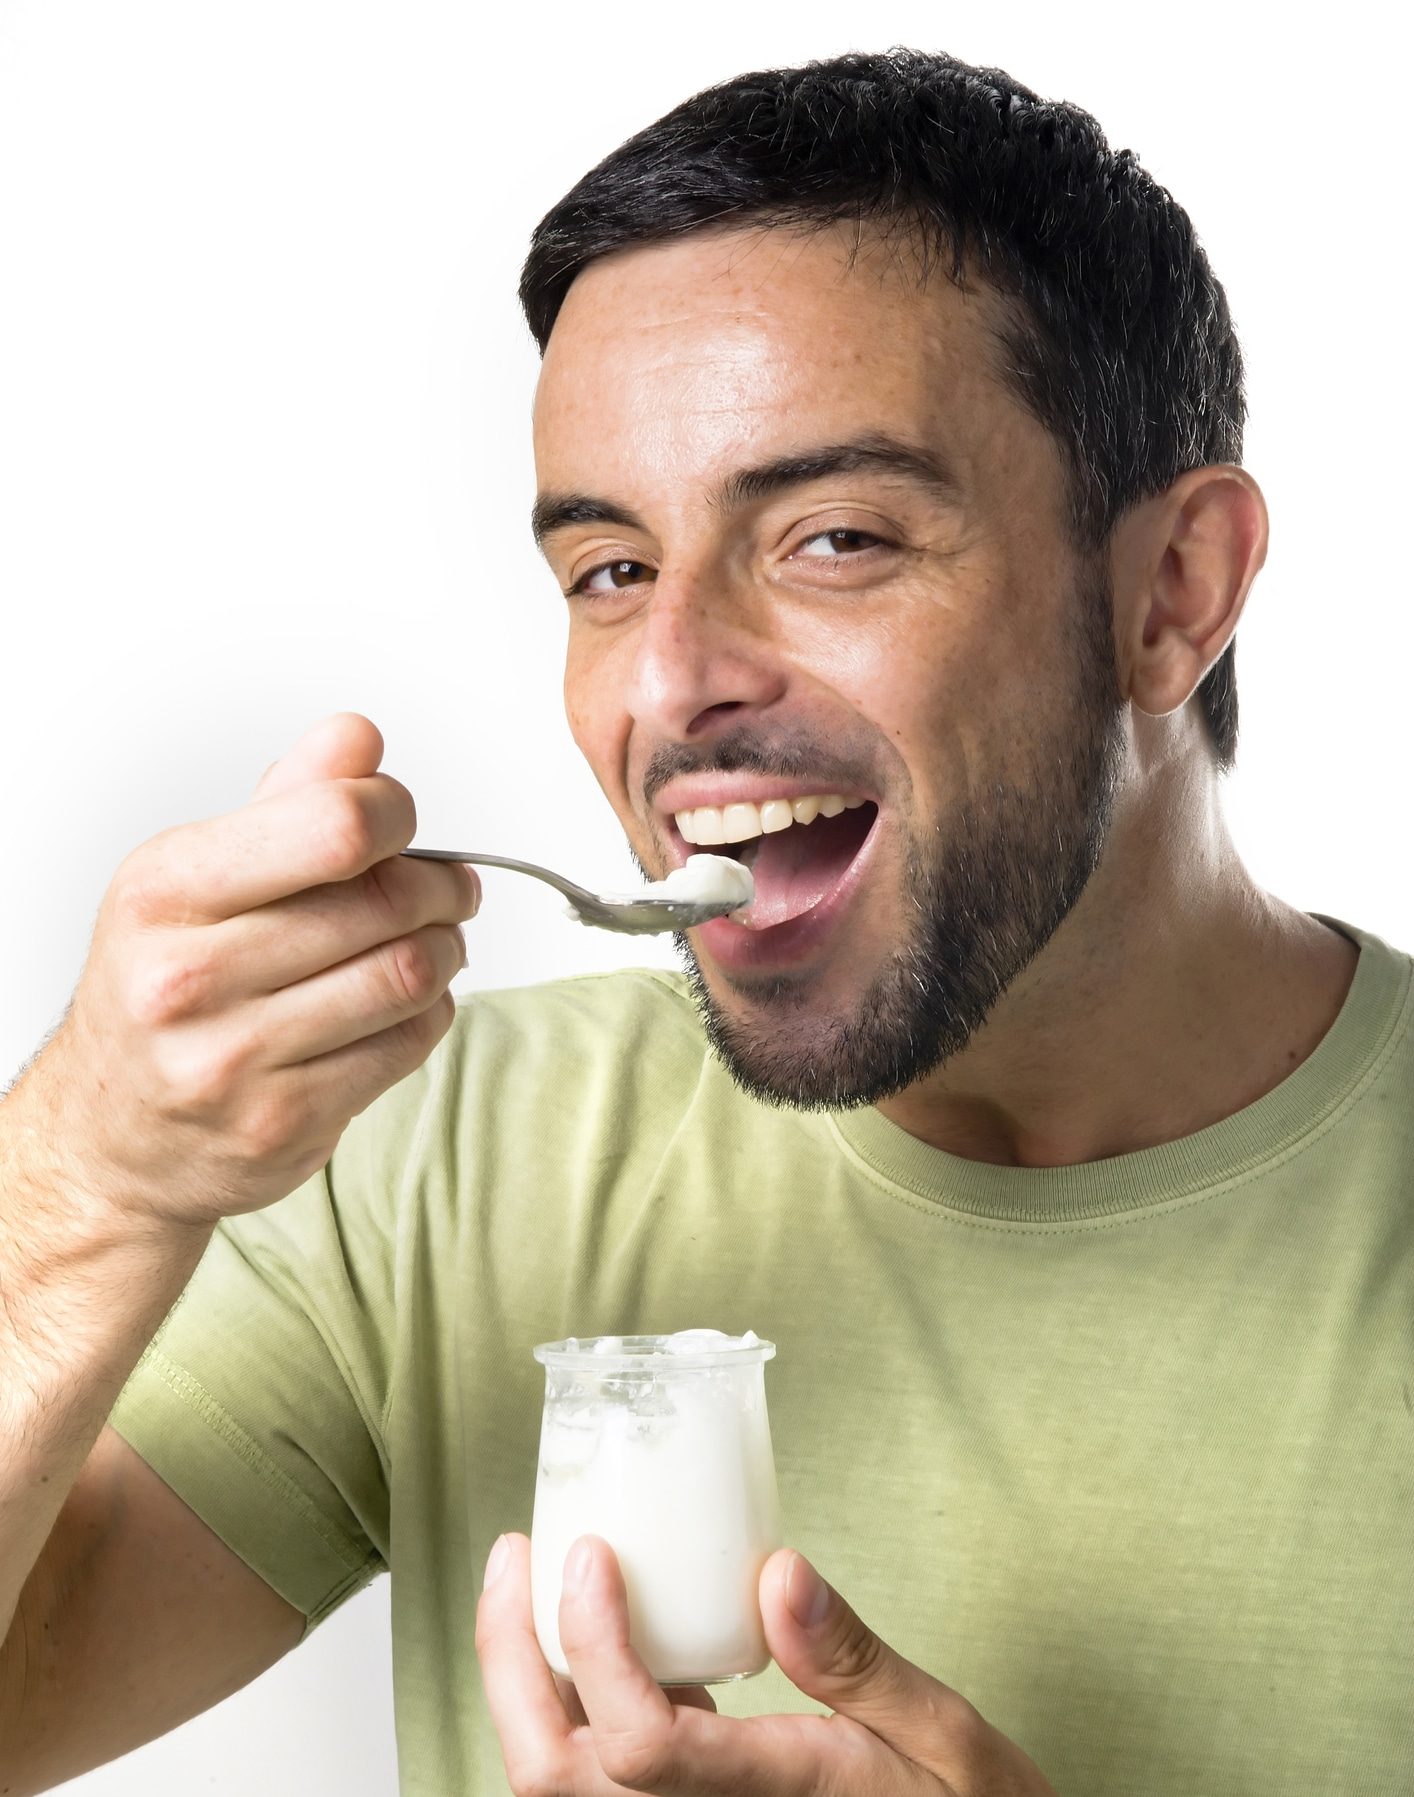 man eating yogurt